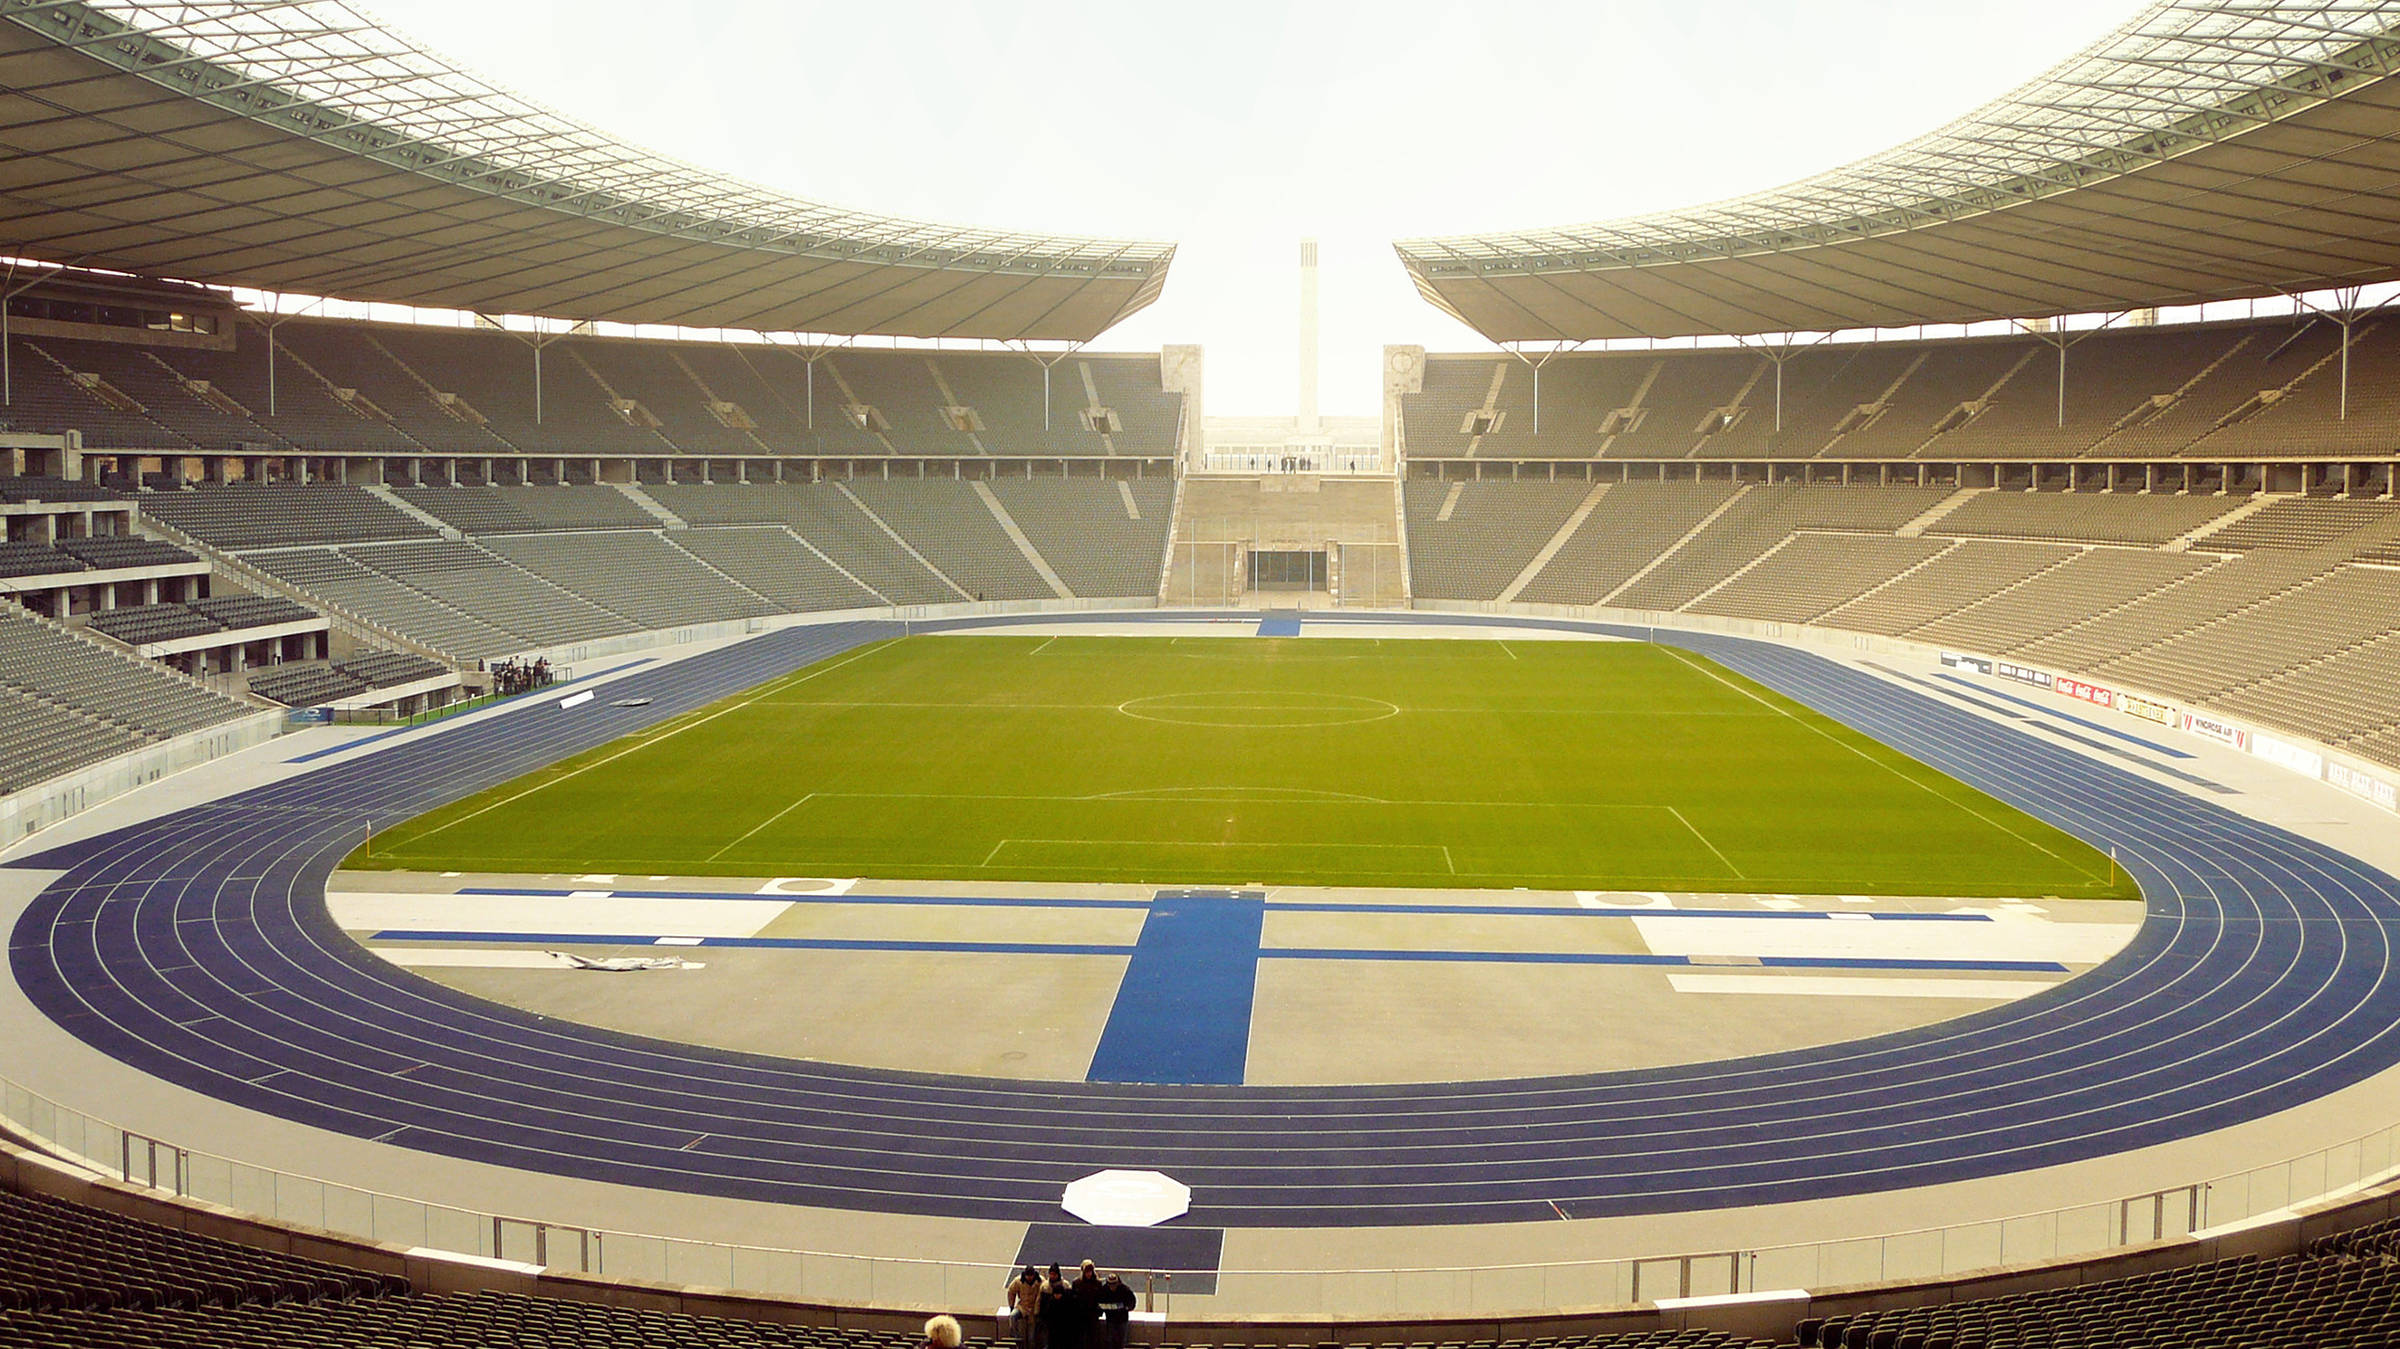 Vue du stade olympique près de l'hôtel Hyperion Hotel Berlin - Site internet officiel